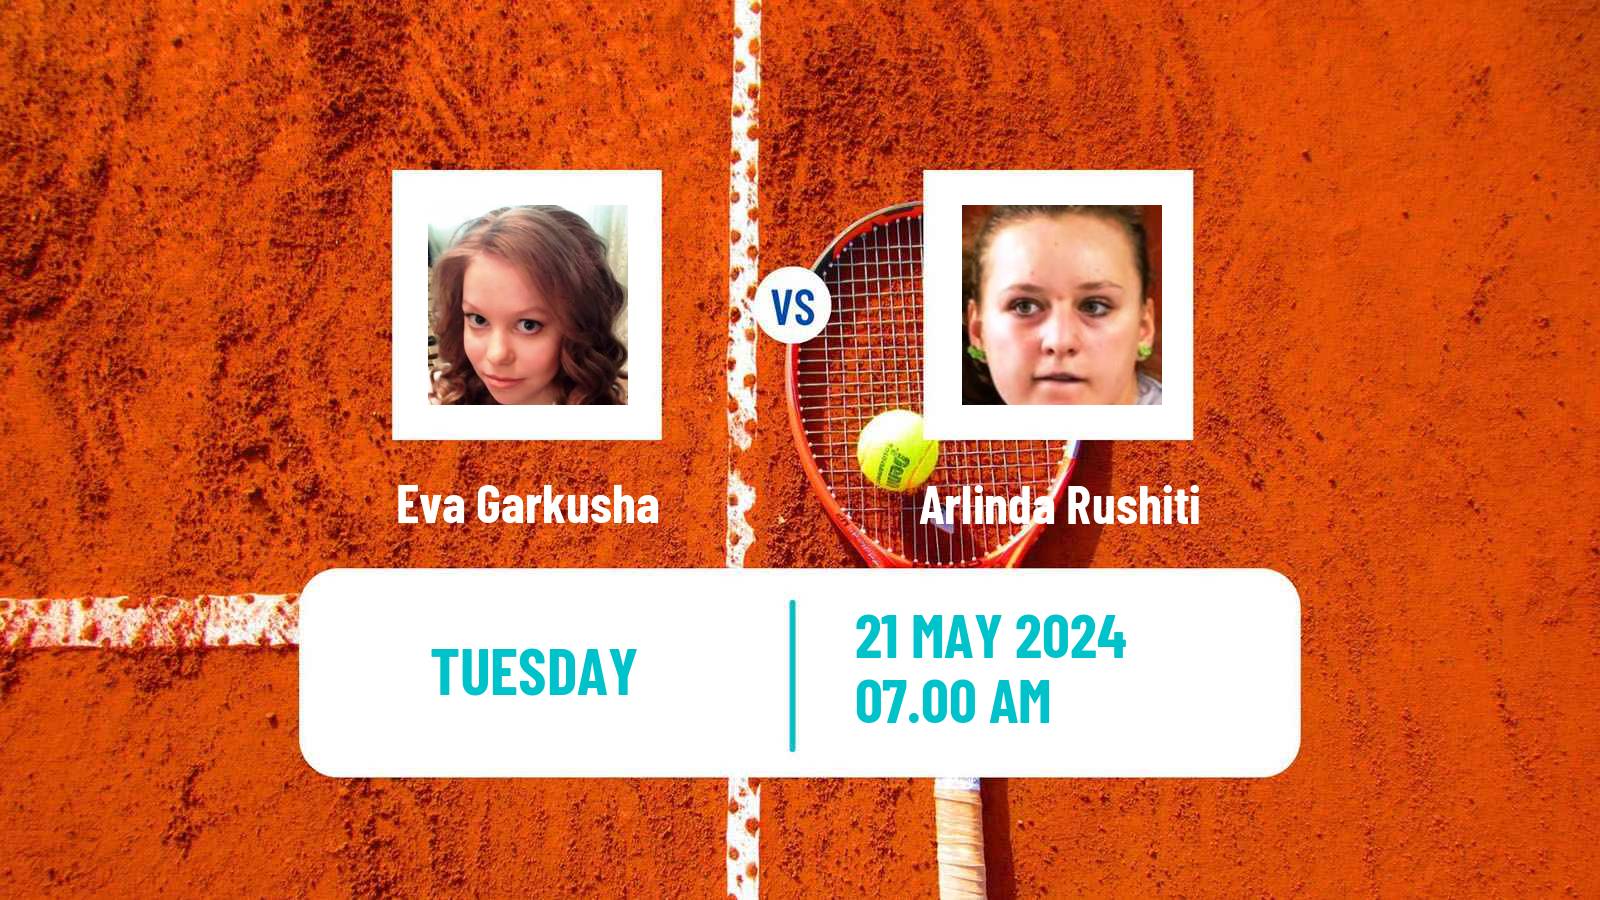 Tennis ITF W15 Monastir 19 Women Eva Garkusha - Arlinda Rushiti